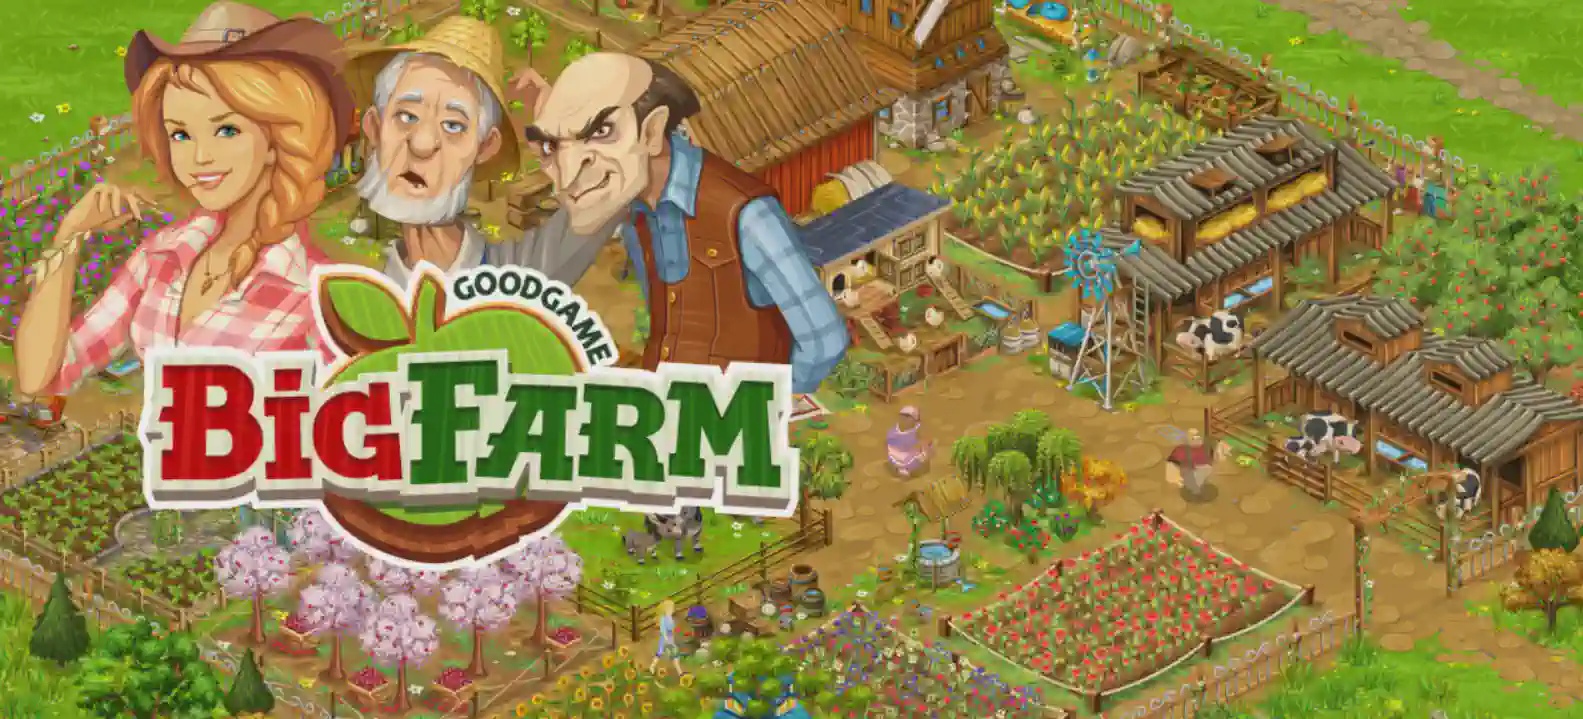 Big Farm скрин игры